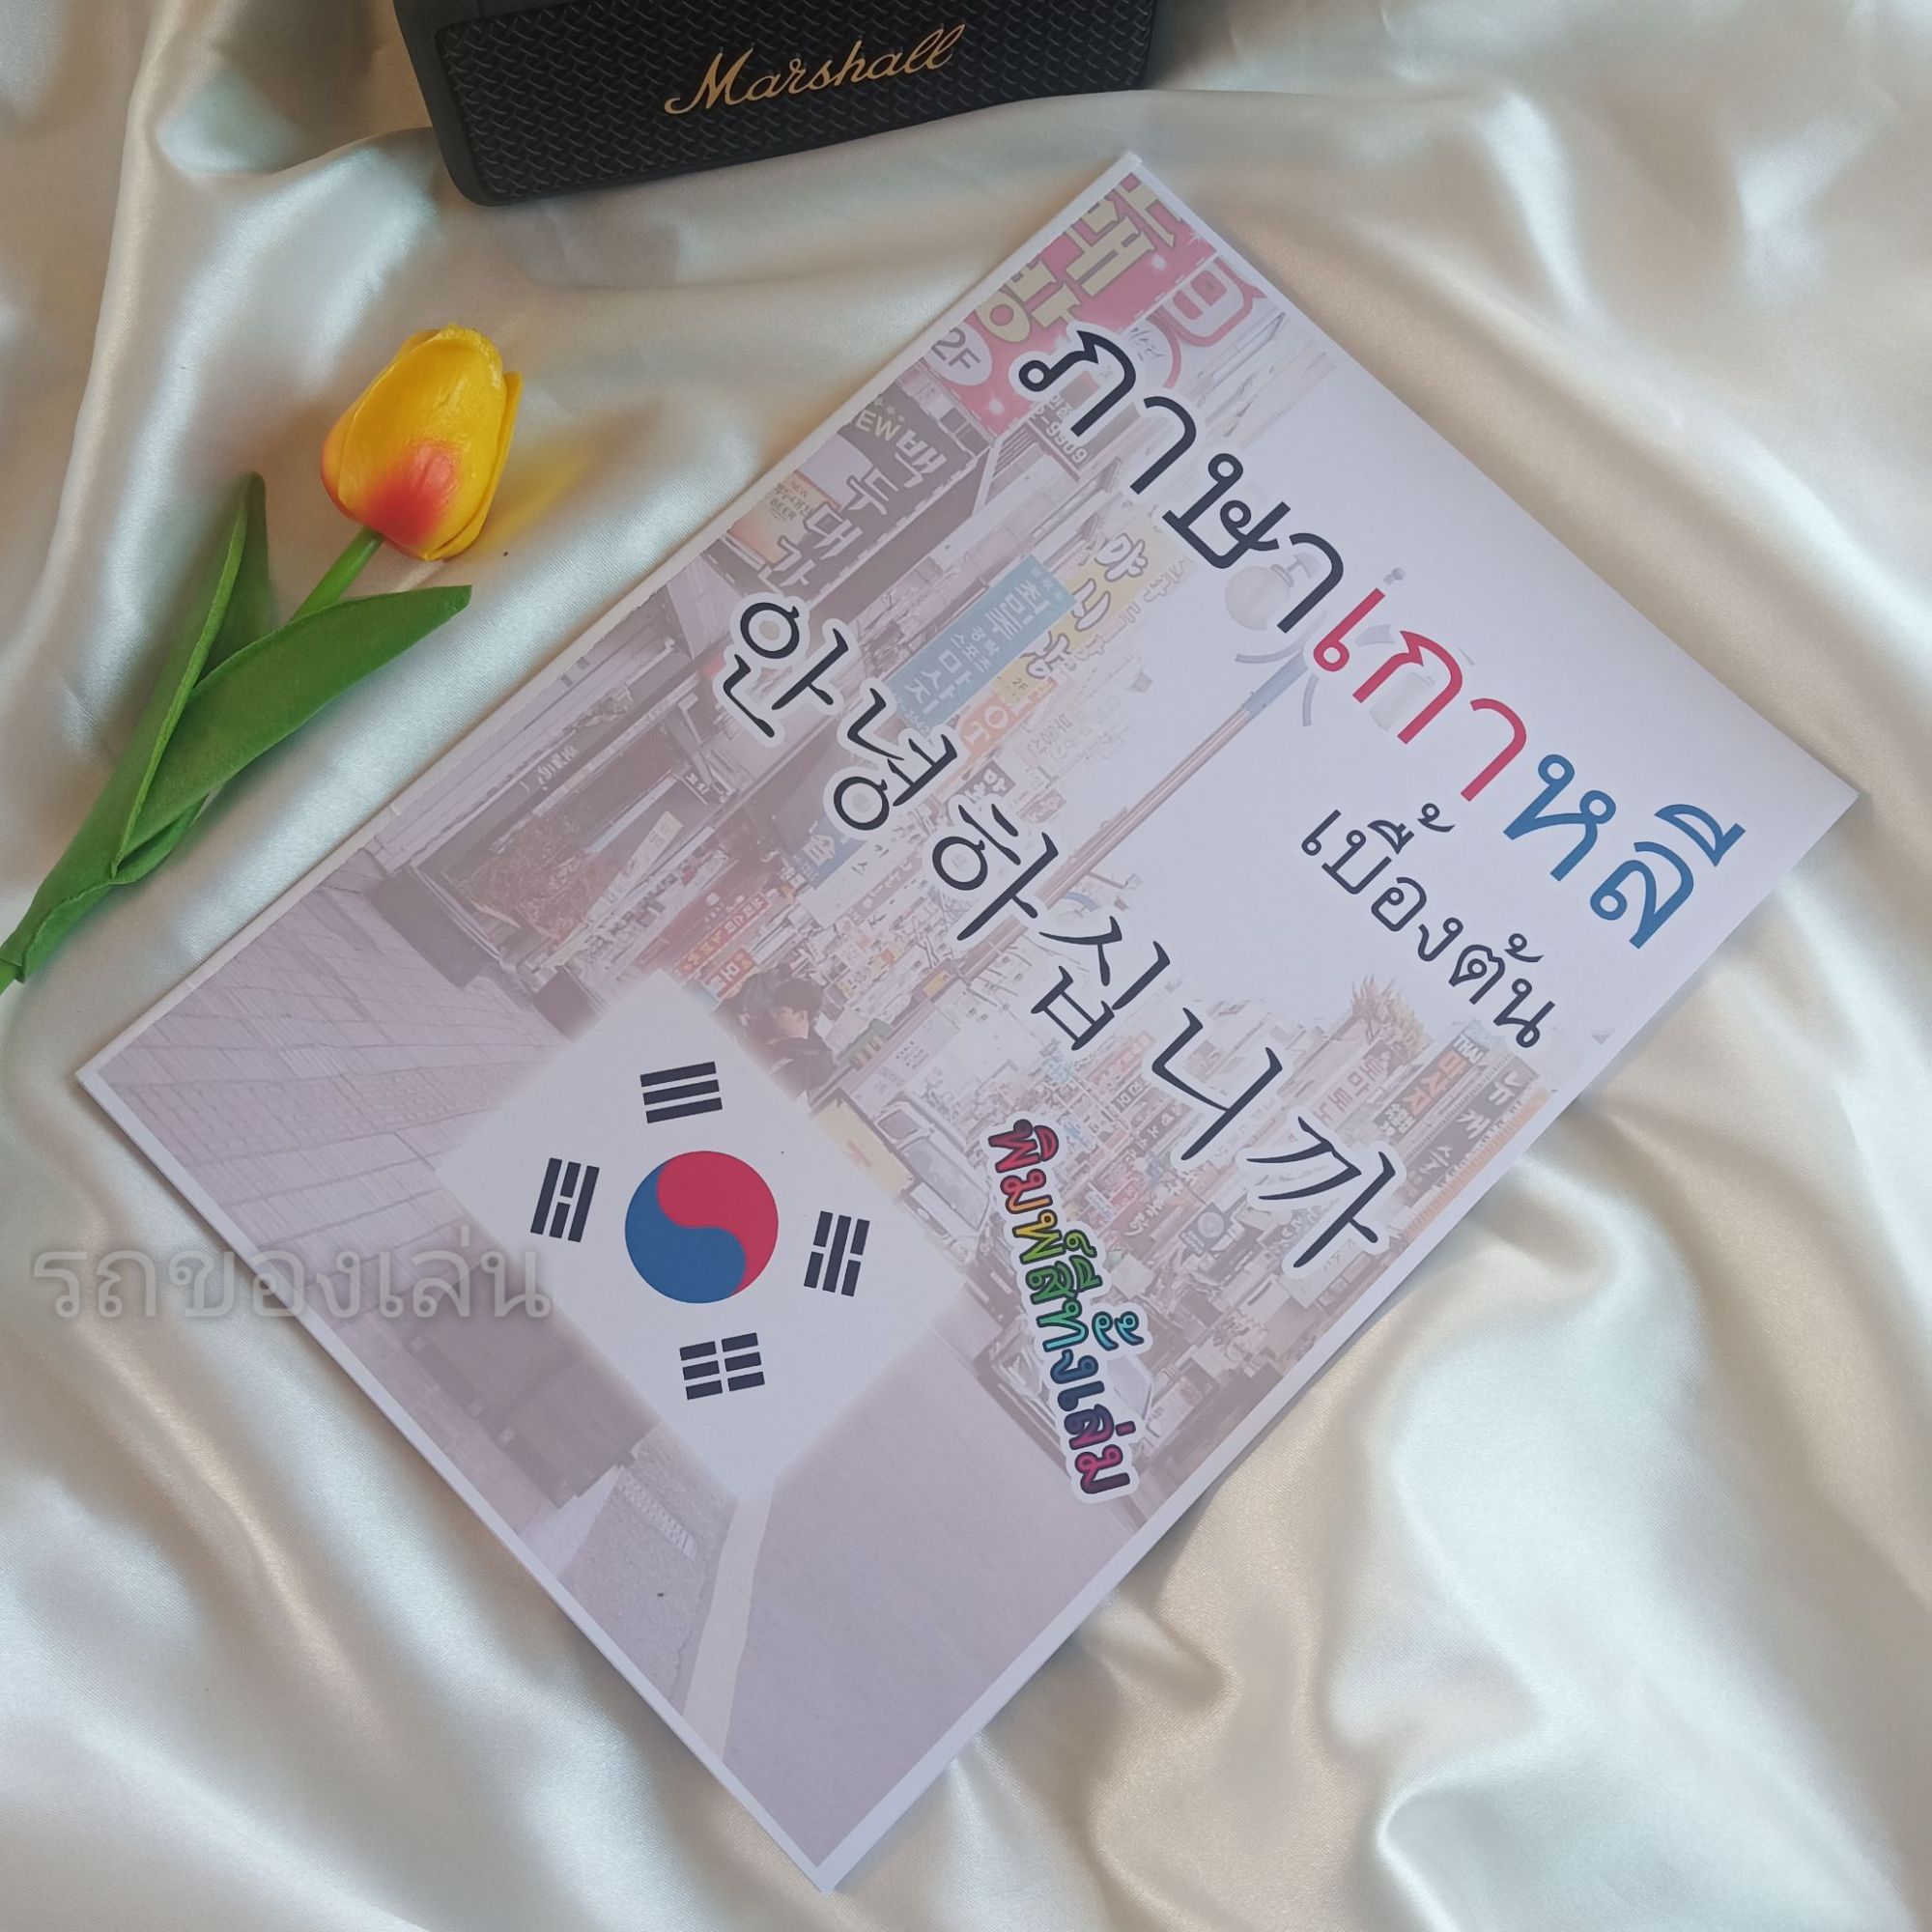 ภาษาเกาหลีเบื้องต้น🇰🇷 ฝึกอ่าน ฝึกเขียน สำหรับผู้เริ่มต้น (พร้อมส่ง)

แบบฝึกเรียน พร้อมส่ง ภาษาเกาหลี พิมพ์สีทั้งเล่ม สวยงาม 

สำหรับผู้เริ่มต้นสนใจภาษาเกาหลีพื้นฐาน